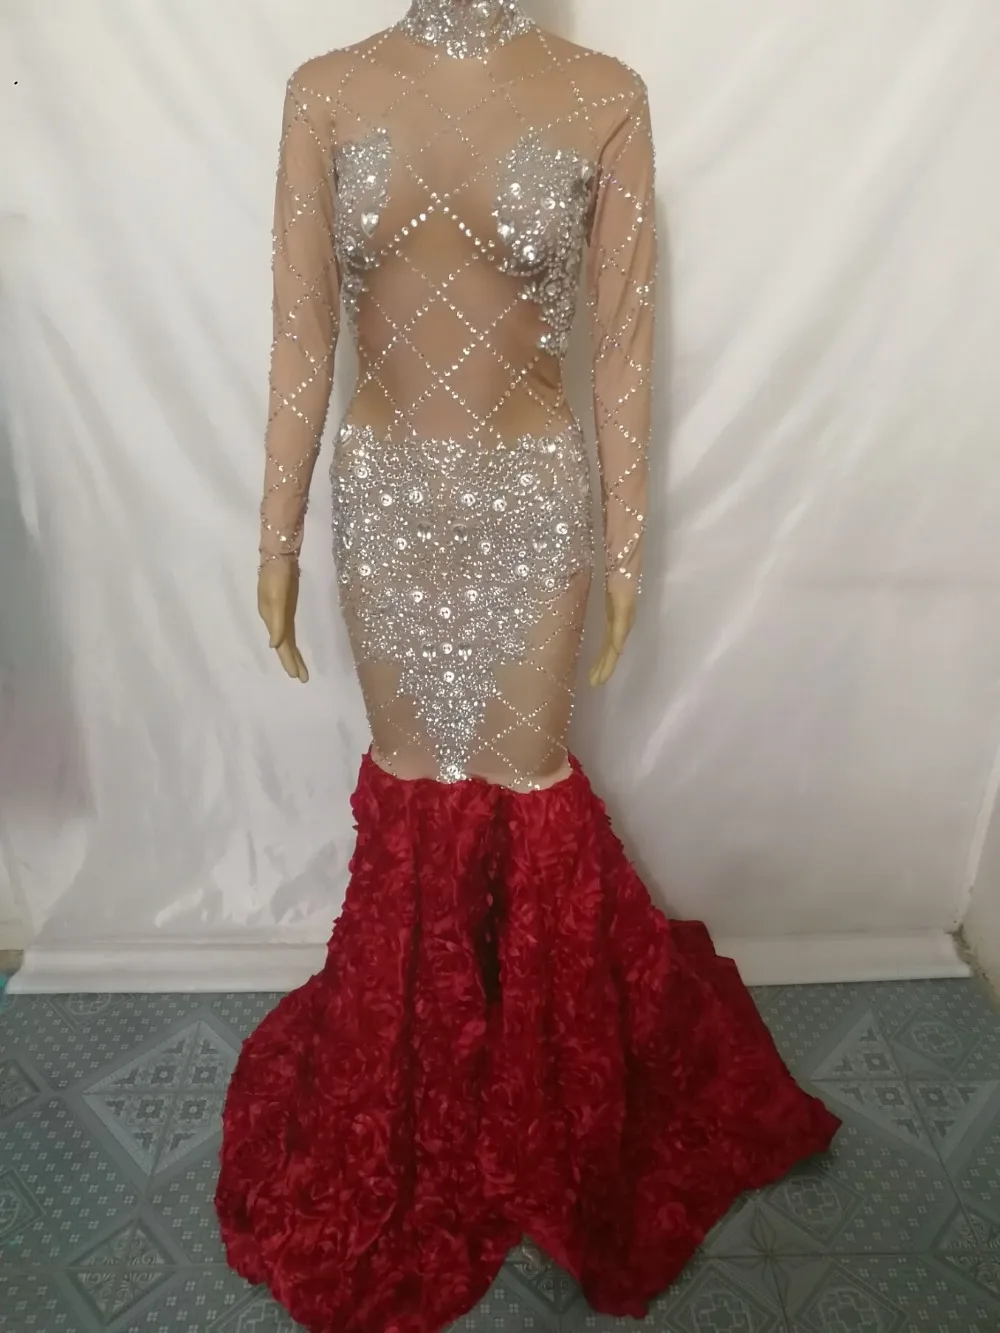 Дамское Платье со шлейфом из блестящих камней, платье с розами и стразами «рыбий хвост», высококачественный костюм для вечеринки, выпускного, подиума, сценический наряд